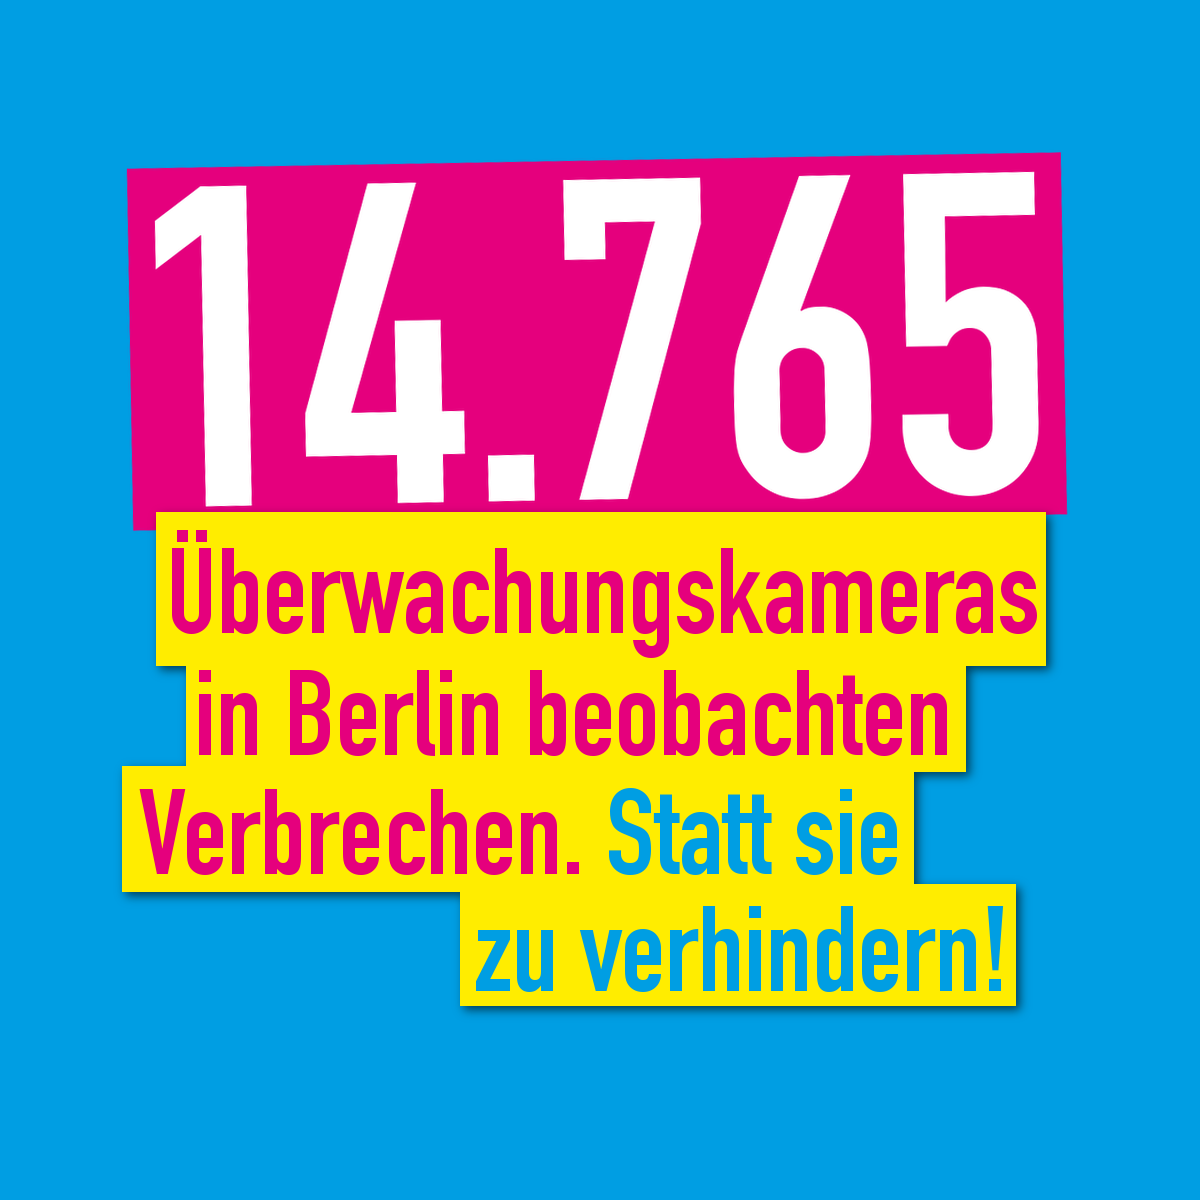 Berliner #Senat plant Ausweitung der #Videoüberwachung- wir lehnen das entschieden ab! 
#StopWatchingUs